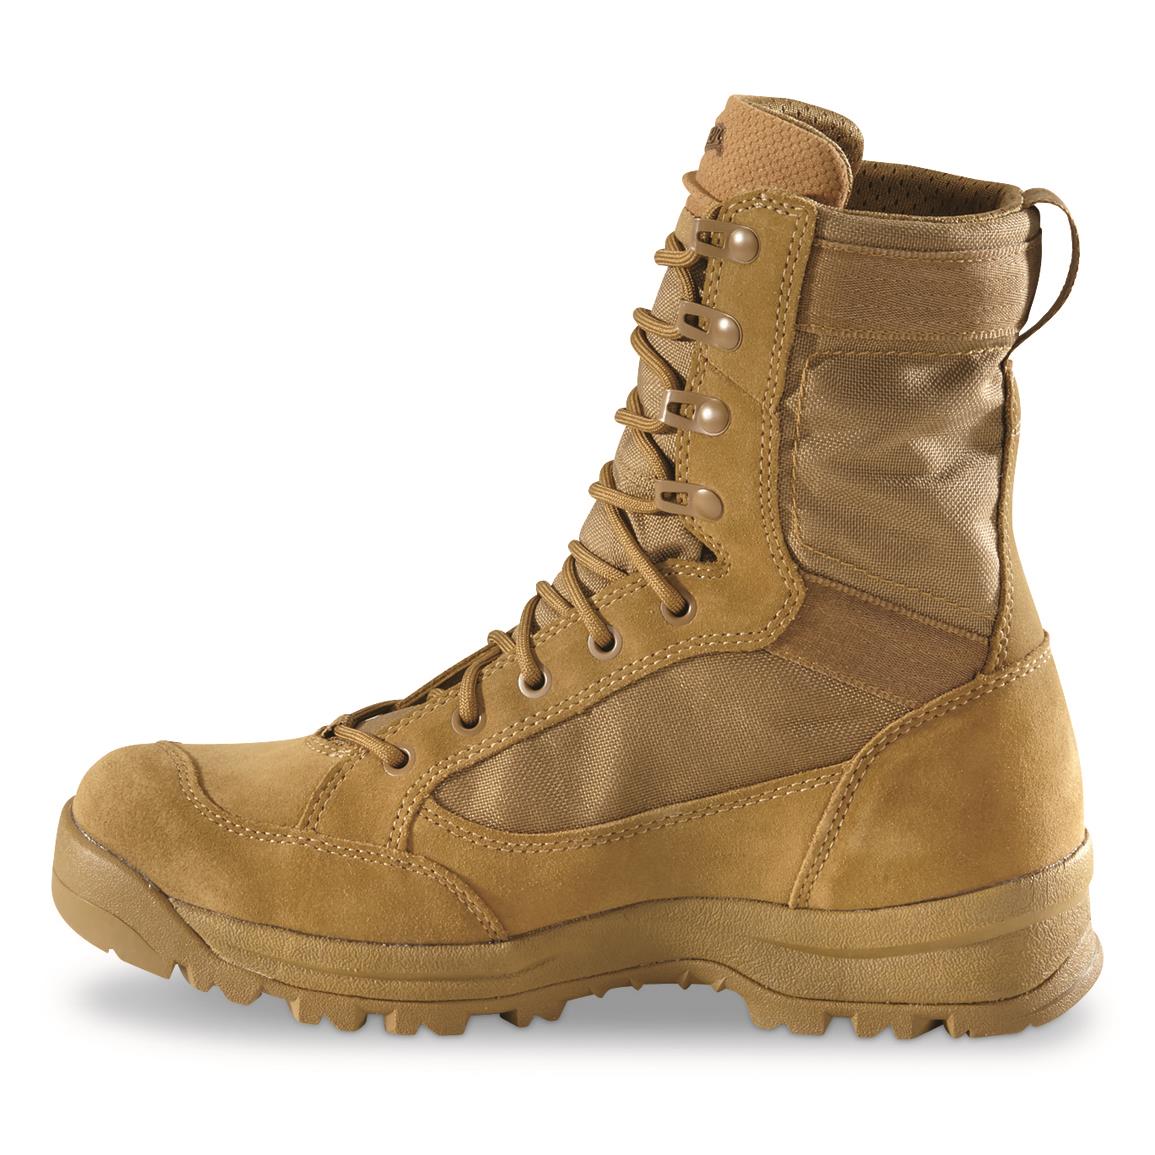 men's tactical waterproof boots